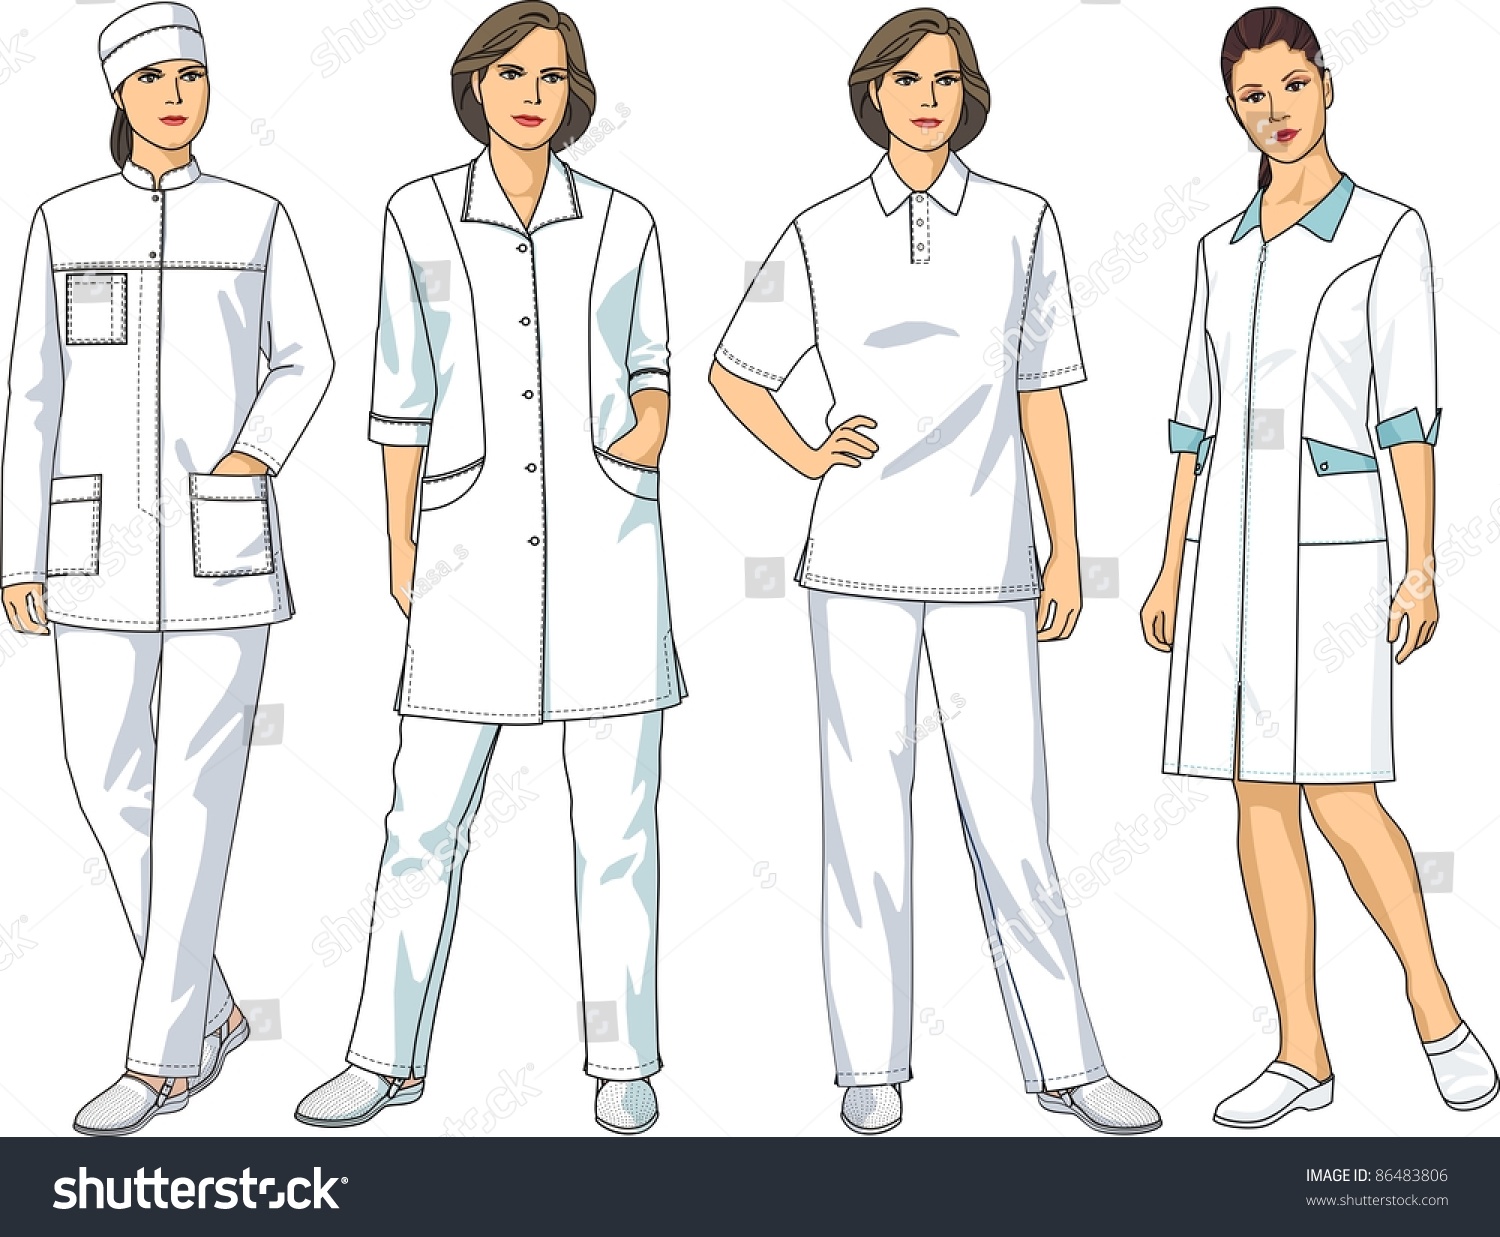 Медицинский халат иллюстрация